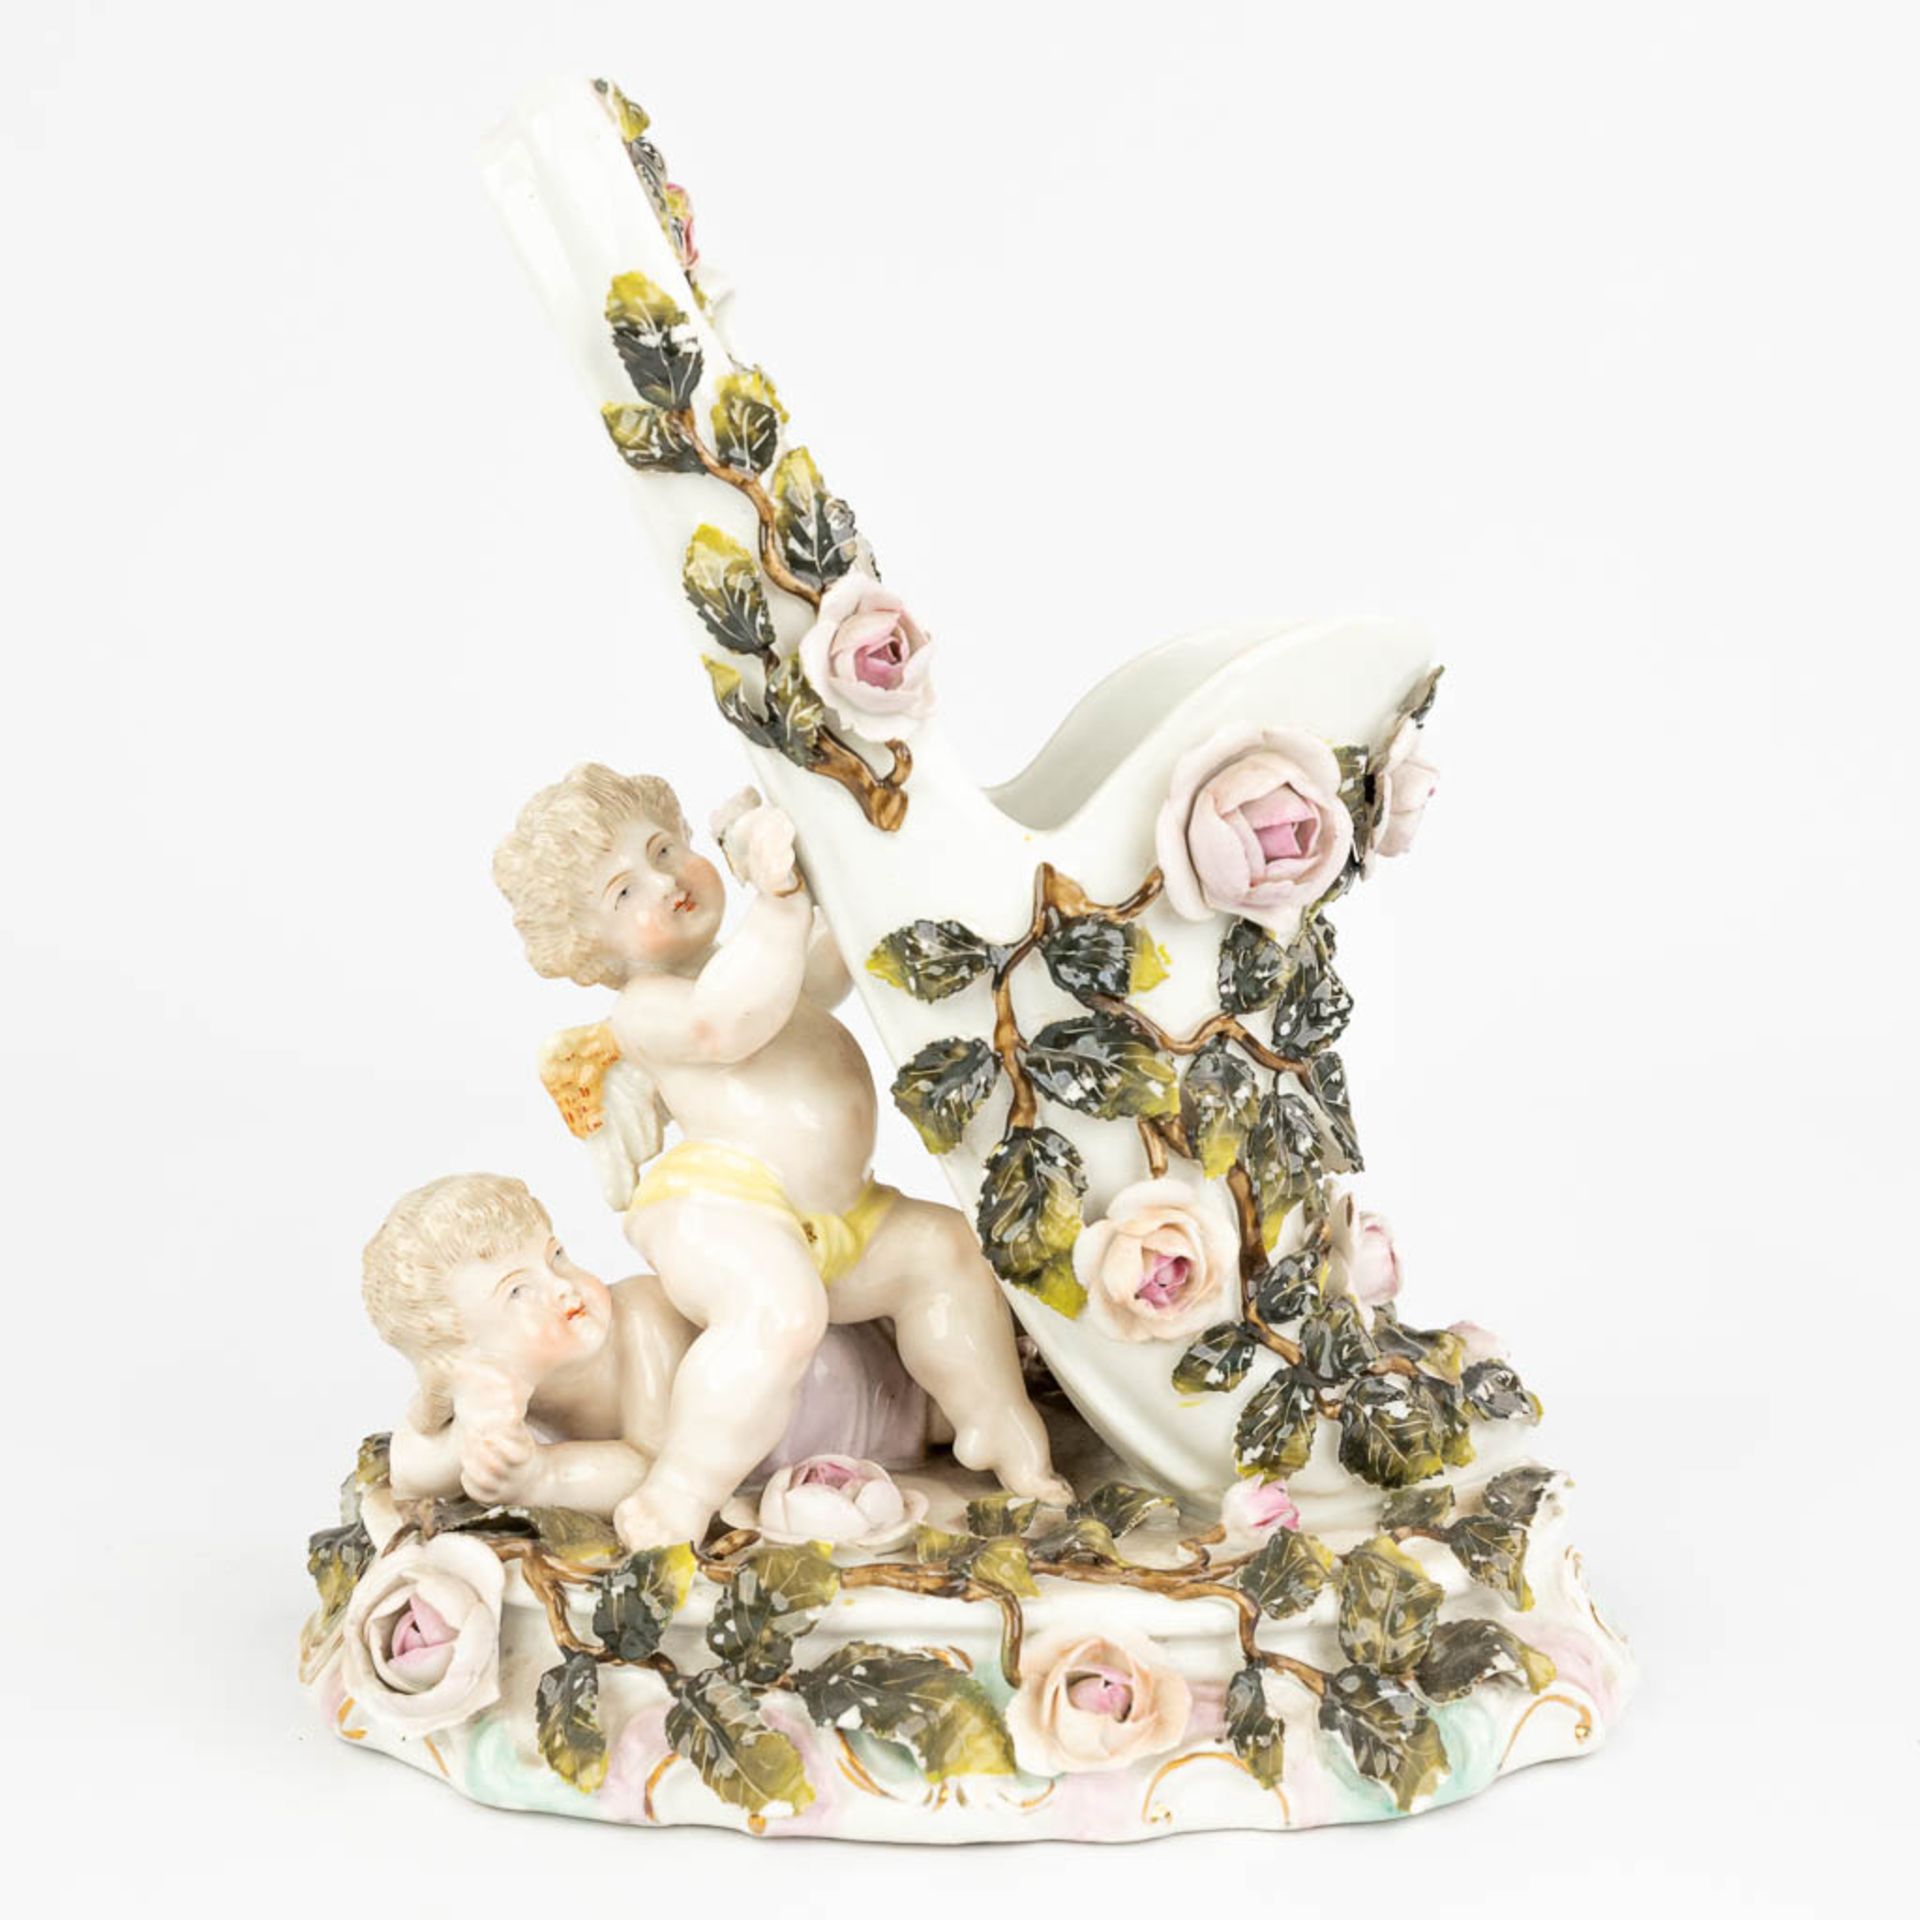 Sitzendorf & 'Royal Vienna' a set of 2 porcelain items. (L:12 x W:20 x H:23 cm) - Image 19 of 22